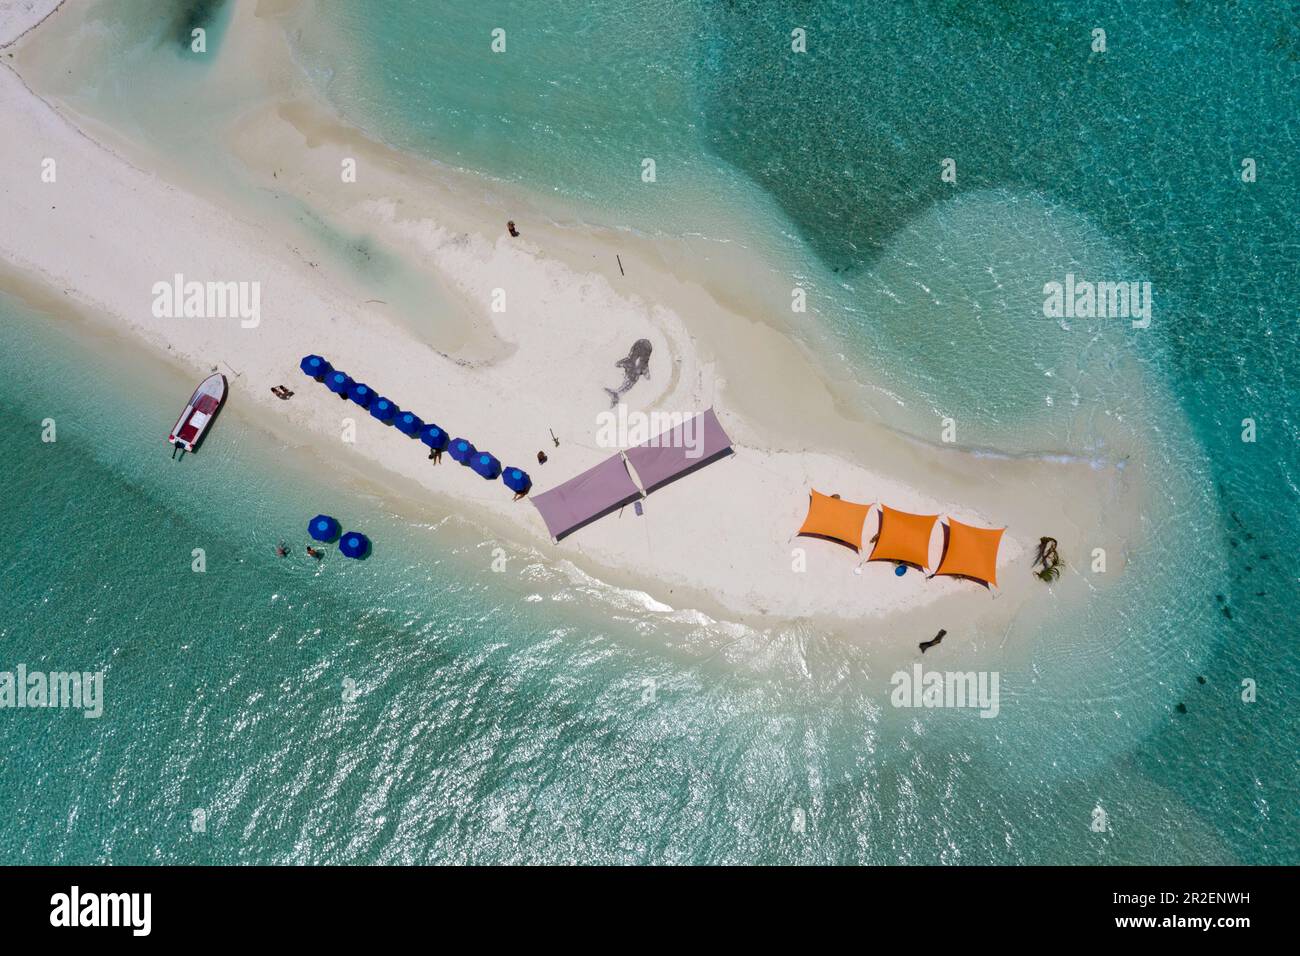 Île de barbecue, Bodumohora, Atoll de Felidhu, Océan Indien, Maldives Banque D'Images